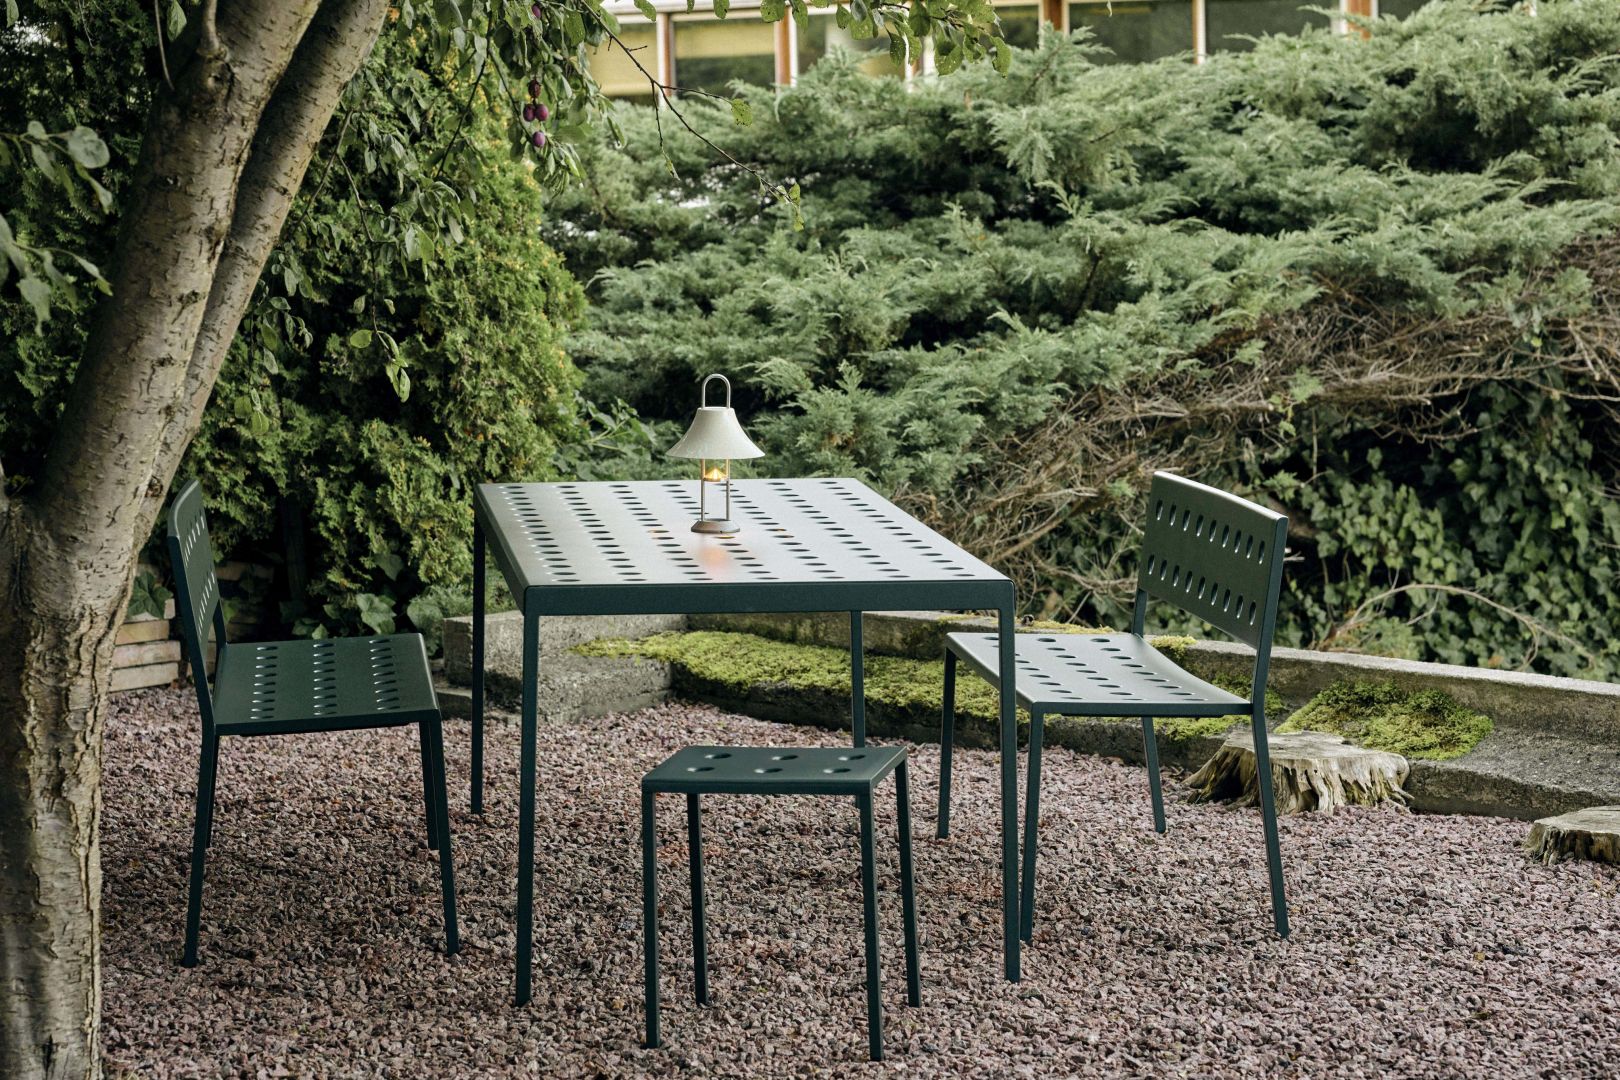 Krzesła, ławki i stoły sprawdzą się w trakcie ogrodowych przyjęć i celebracji w mniejszym gronie. Fot. Moma Studio